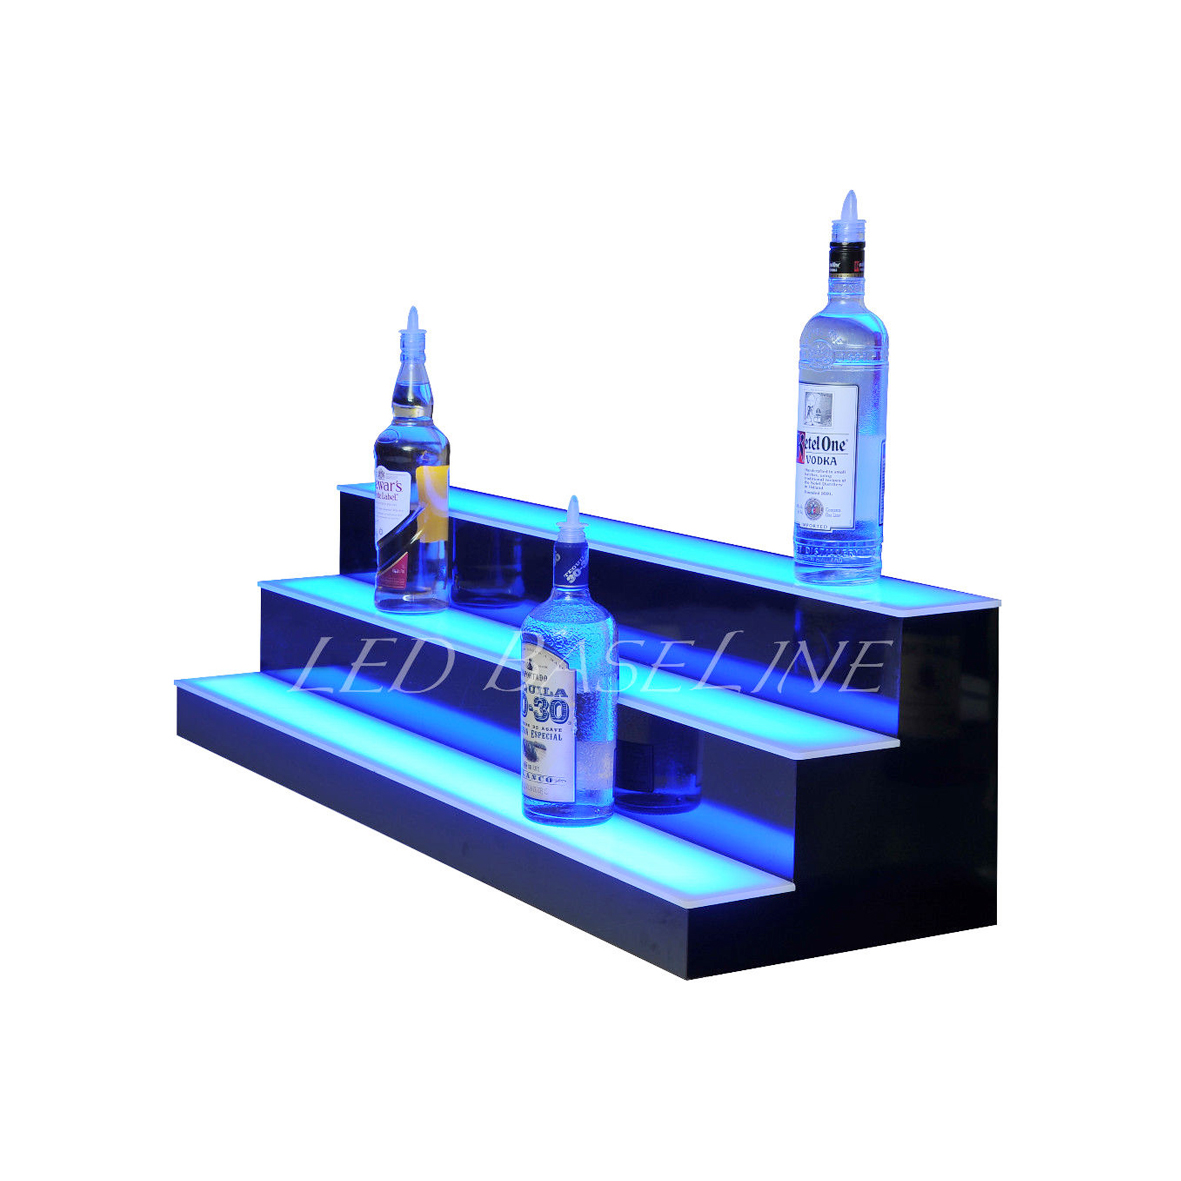 3-Tier Lighted Acrylic Wine Bottle Display Stand nga adunay RGB Lighting ug Custom Logo